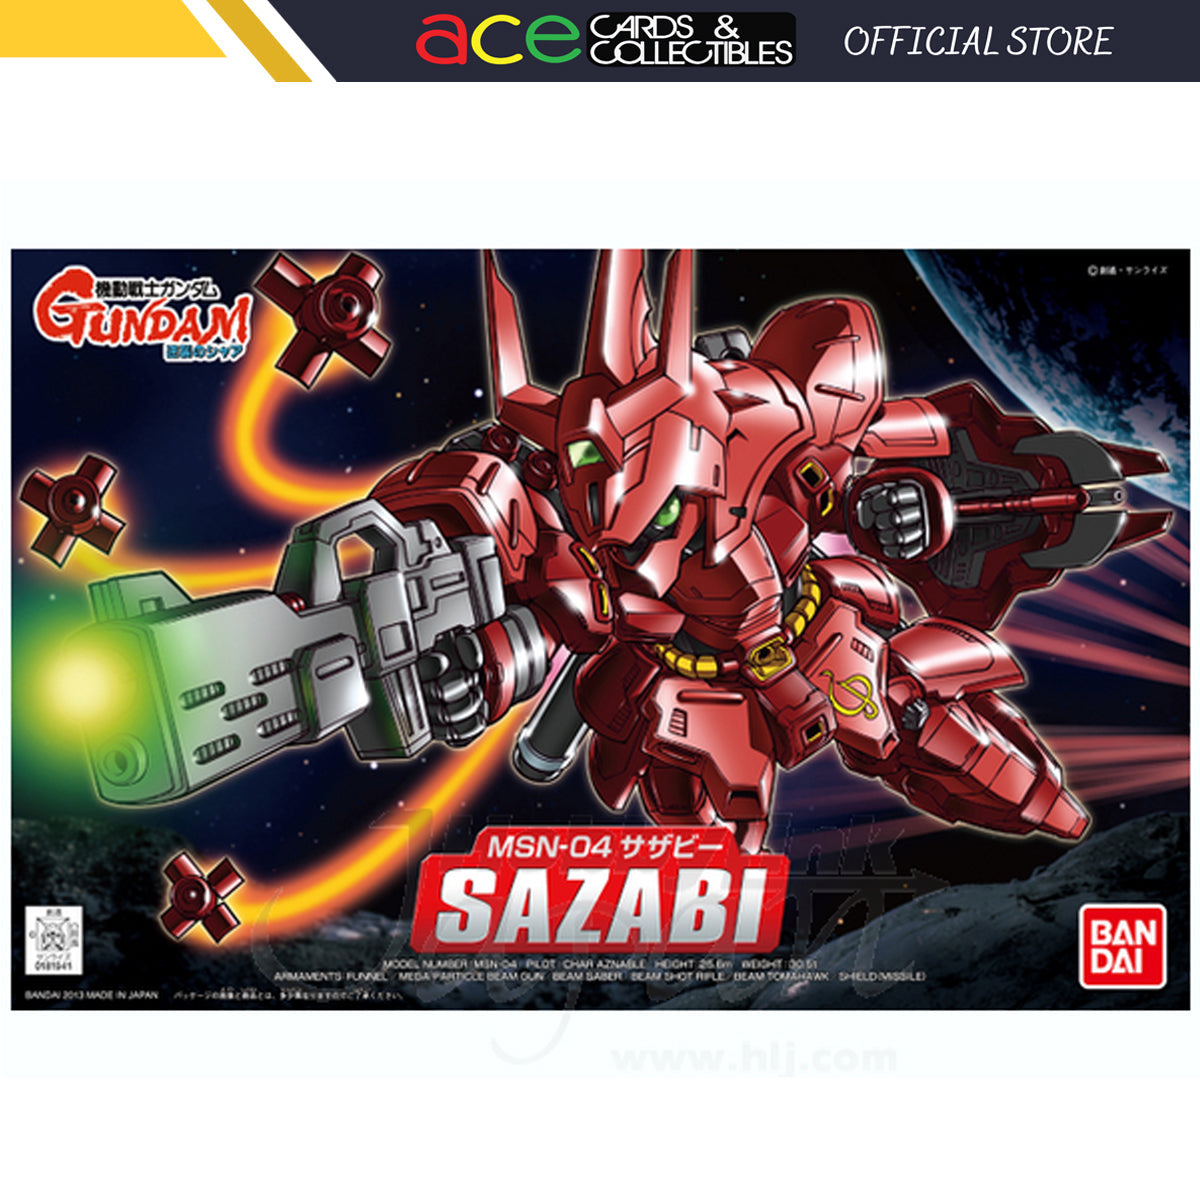 BB382 Sazabi-Bandai-Ace Cards &amp; Collectibles